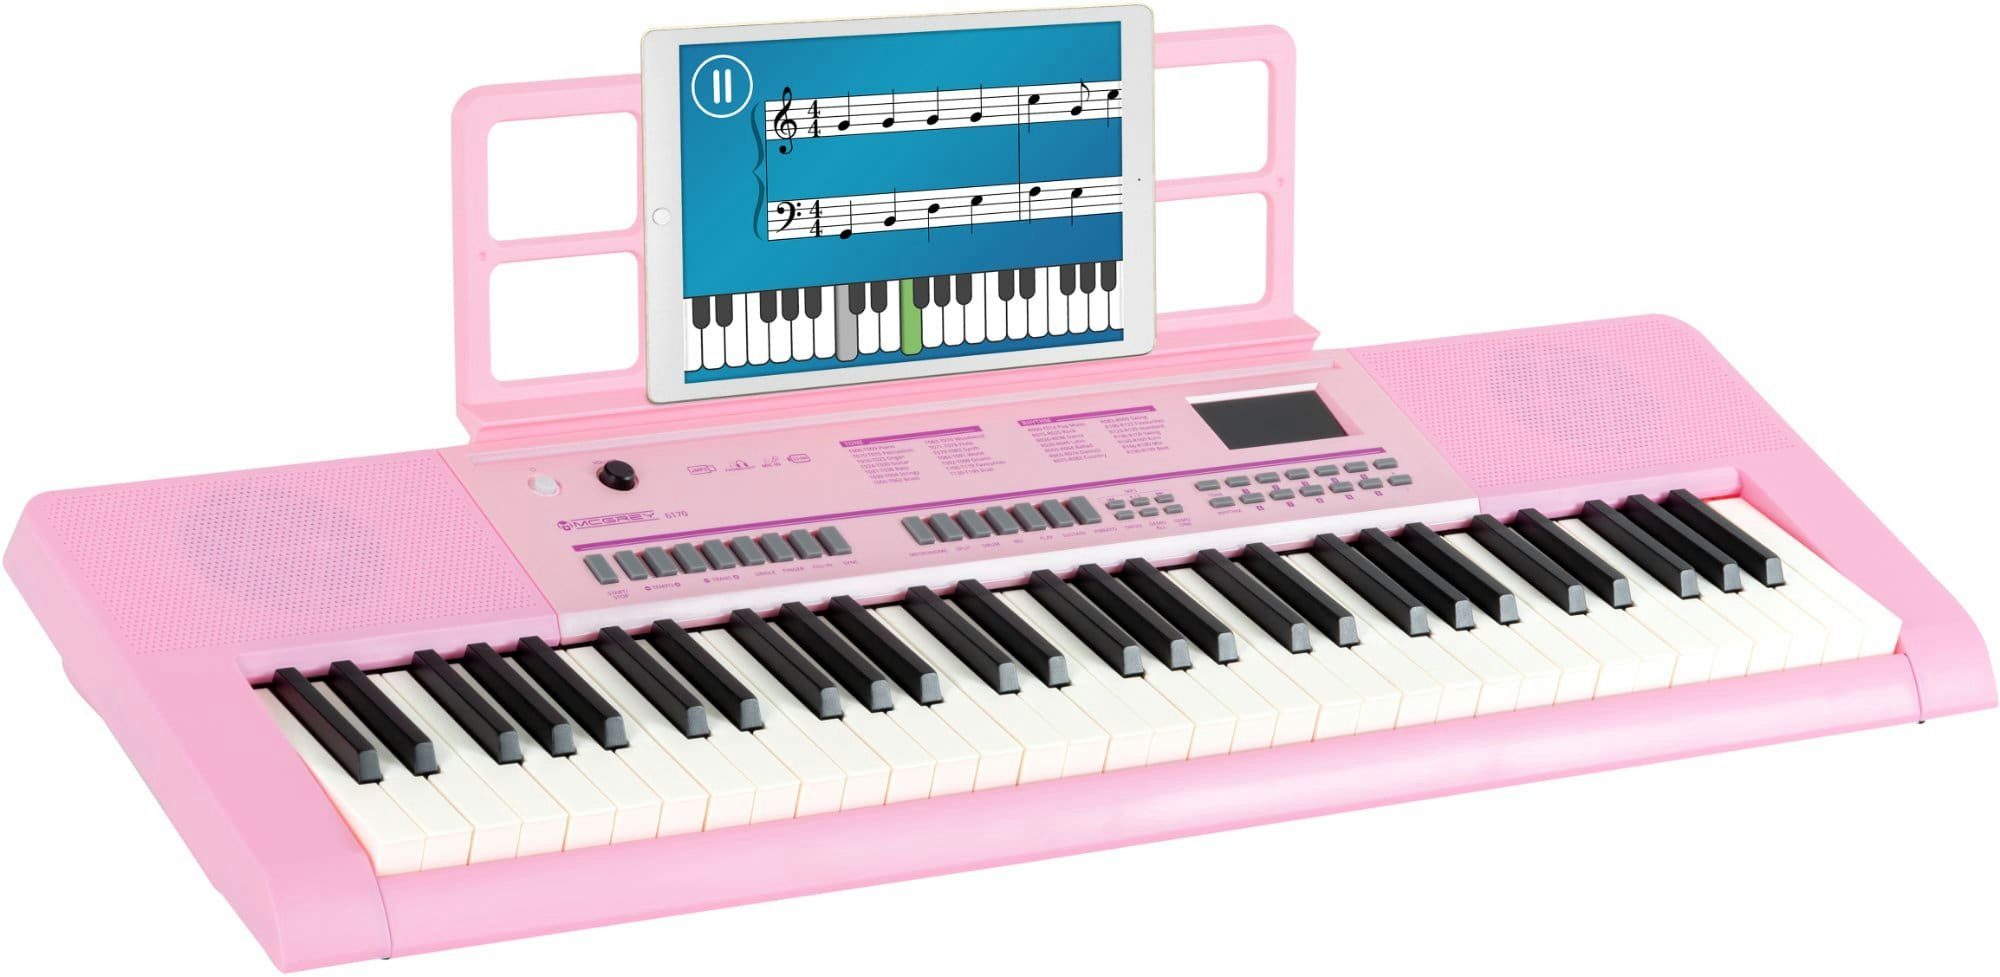 McGrey Home Keyboard 6170 Akku-Keyboard - 61 Tasten-Keyboard mit integriertem Akku, (mit Begleitautomatik und Lernfunktion, Inkl. Mikrofon und Notenhalter), Eingebauter MP3-Player via USB-Stick